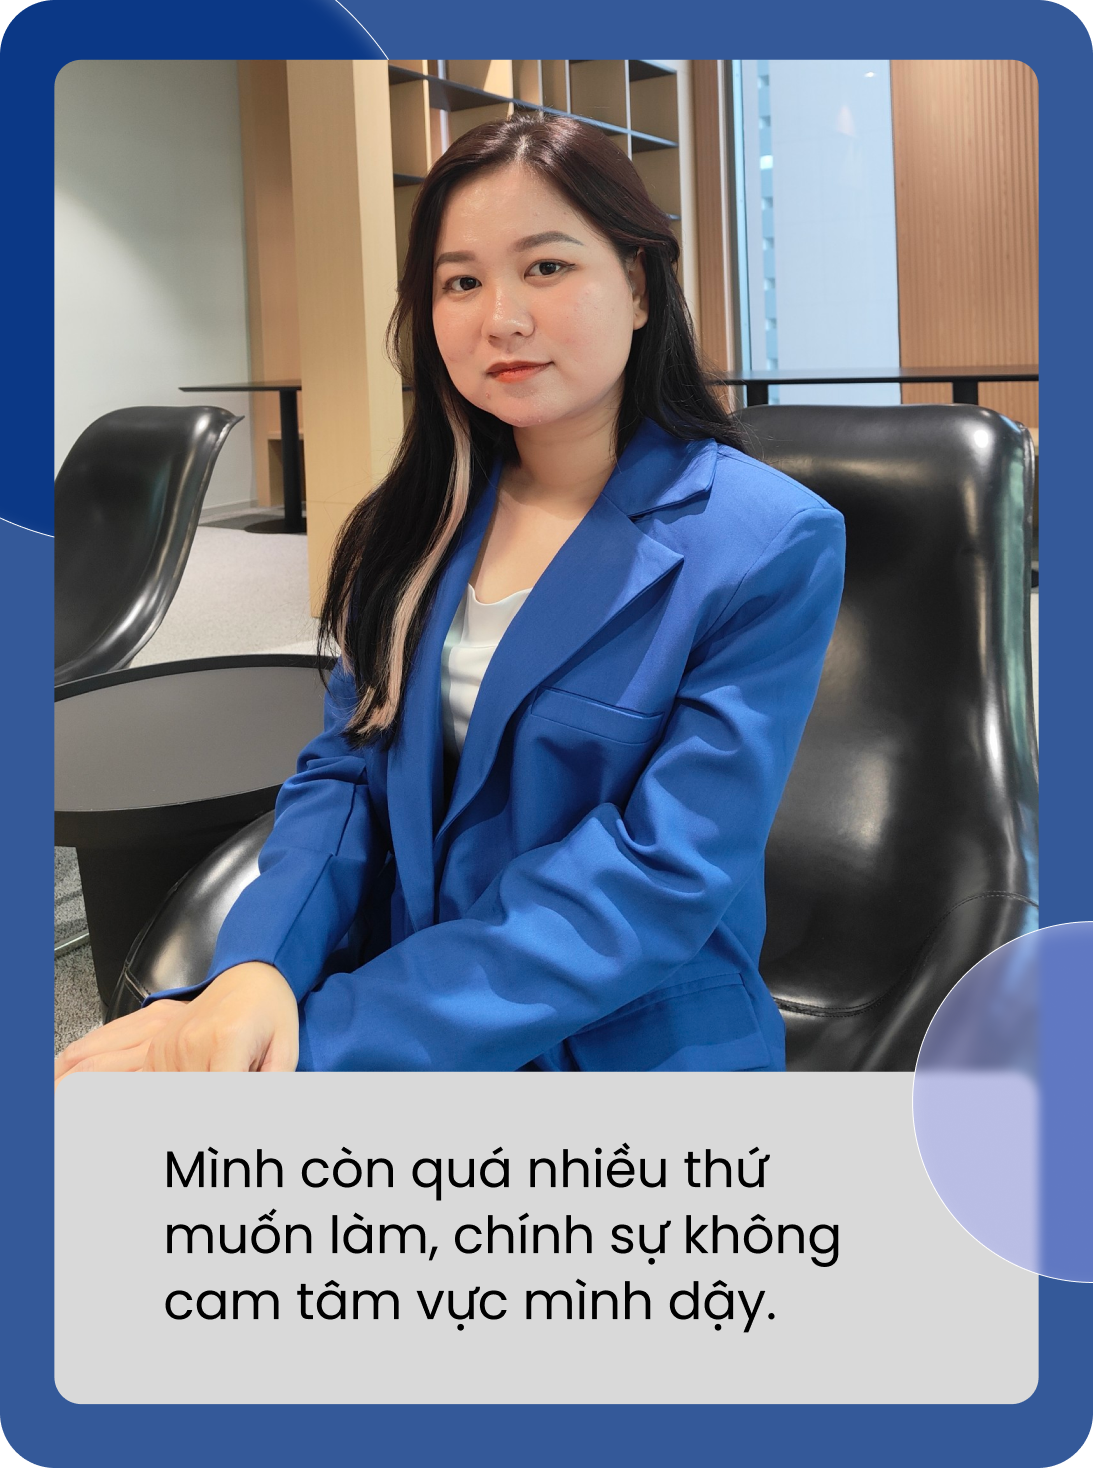 Ngô Thuý Phương Thanh: Từ cô gái từng bị suy thận giai đoạn cuối đến vị trí Giám đốc Marketing khi chưa đầy 30 tuổi - Ảnh 4.